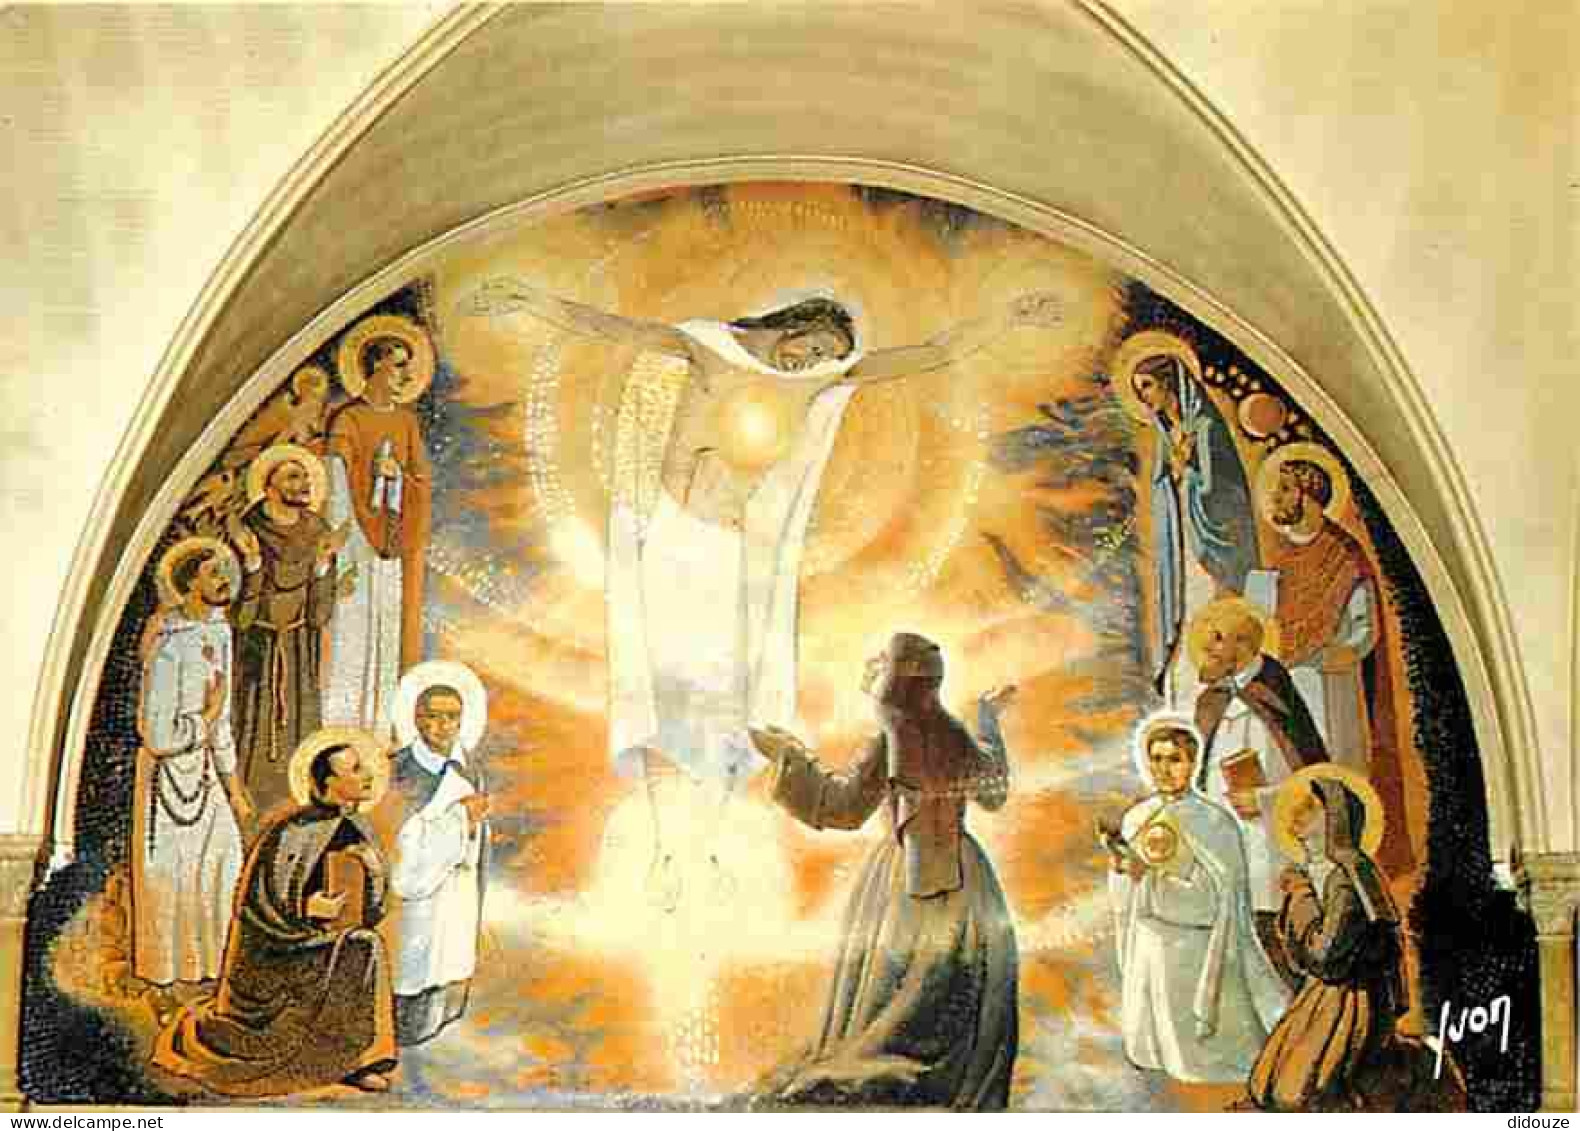 71 - Paray Le Monial - Monastère De La Visitation - Chapelle Des Apparitions - Peinture De Luc Barbier - Art Religieux - - Paray Le Monial